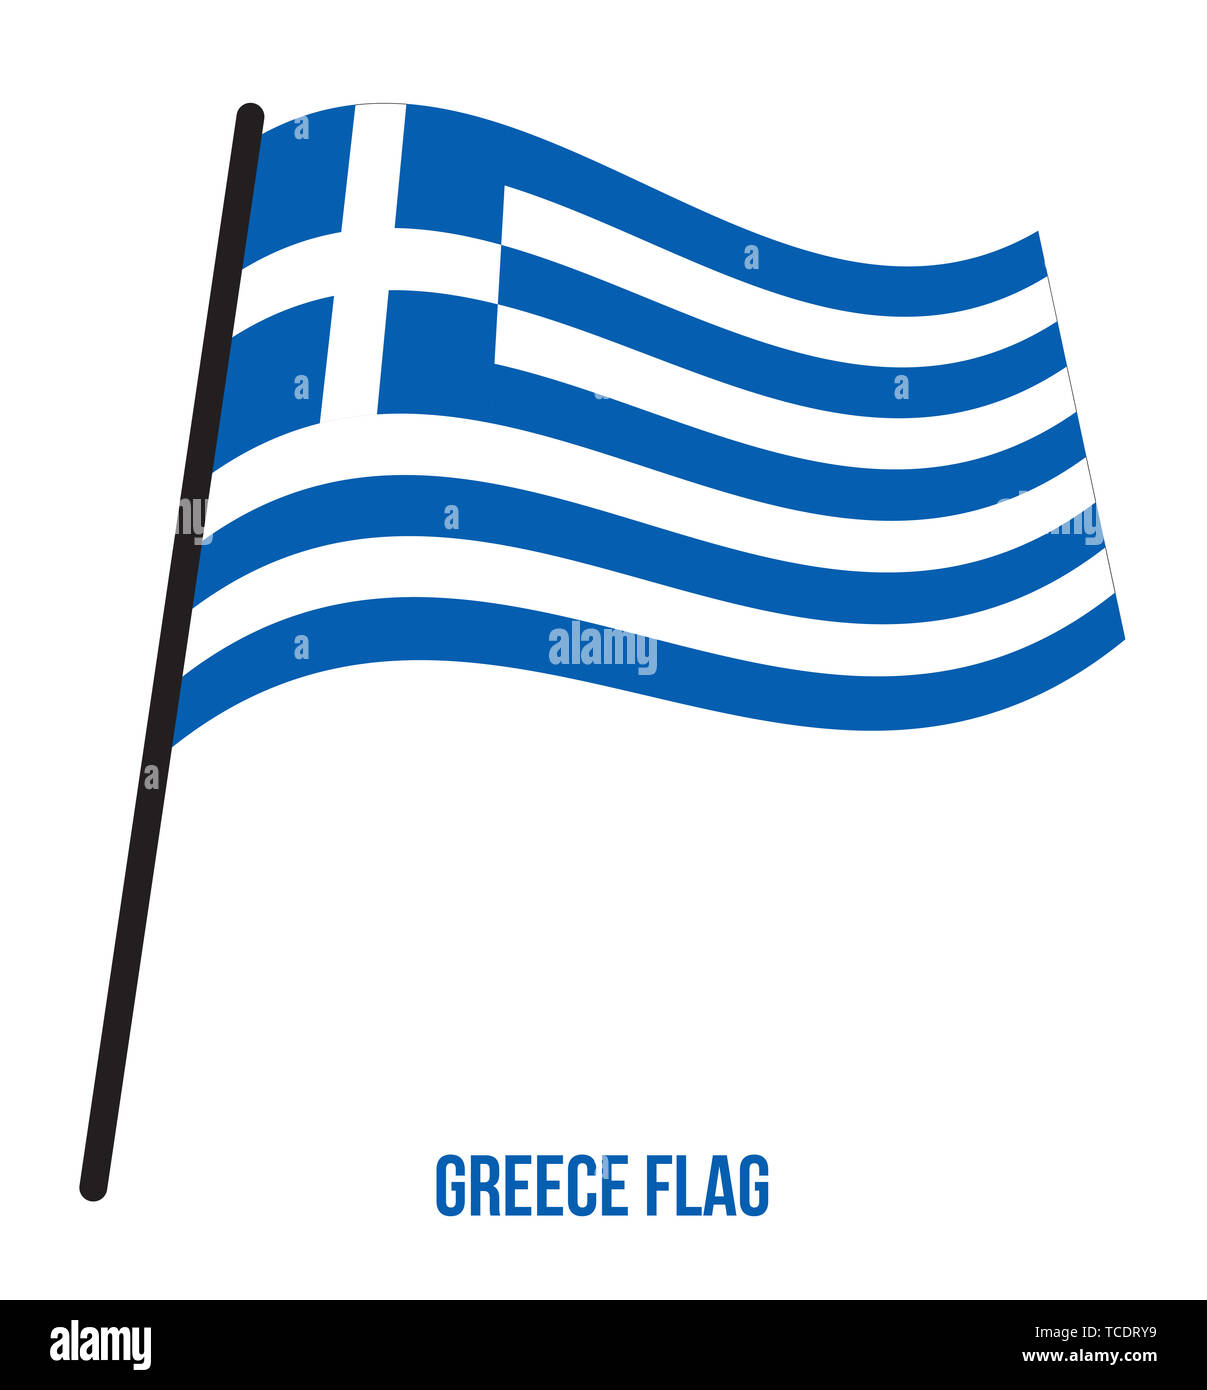 Griechenland Flagge schwenkten Vector Illustration auf weißem Hintergrund.  Griechenland Nationalflagge Stockfotografie - Alamy